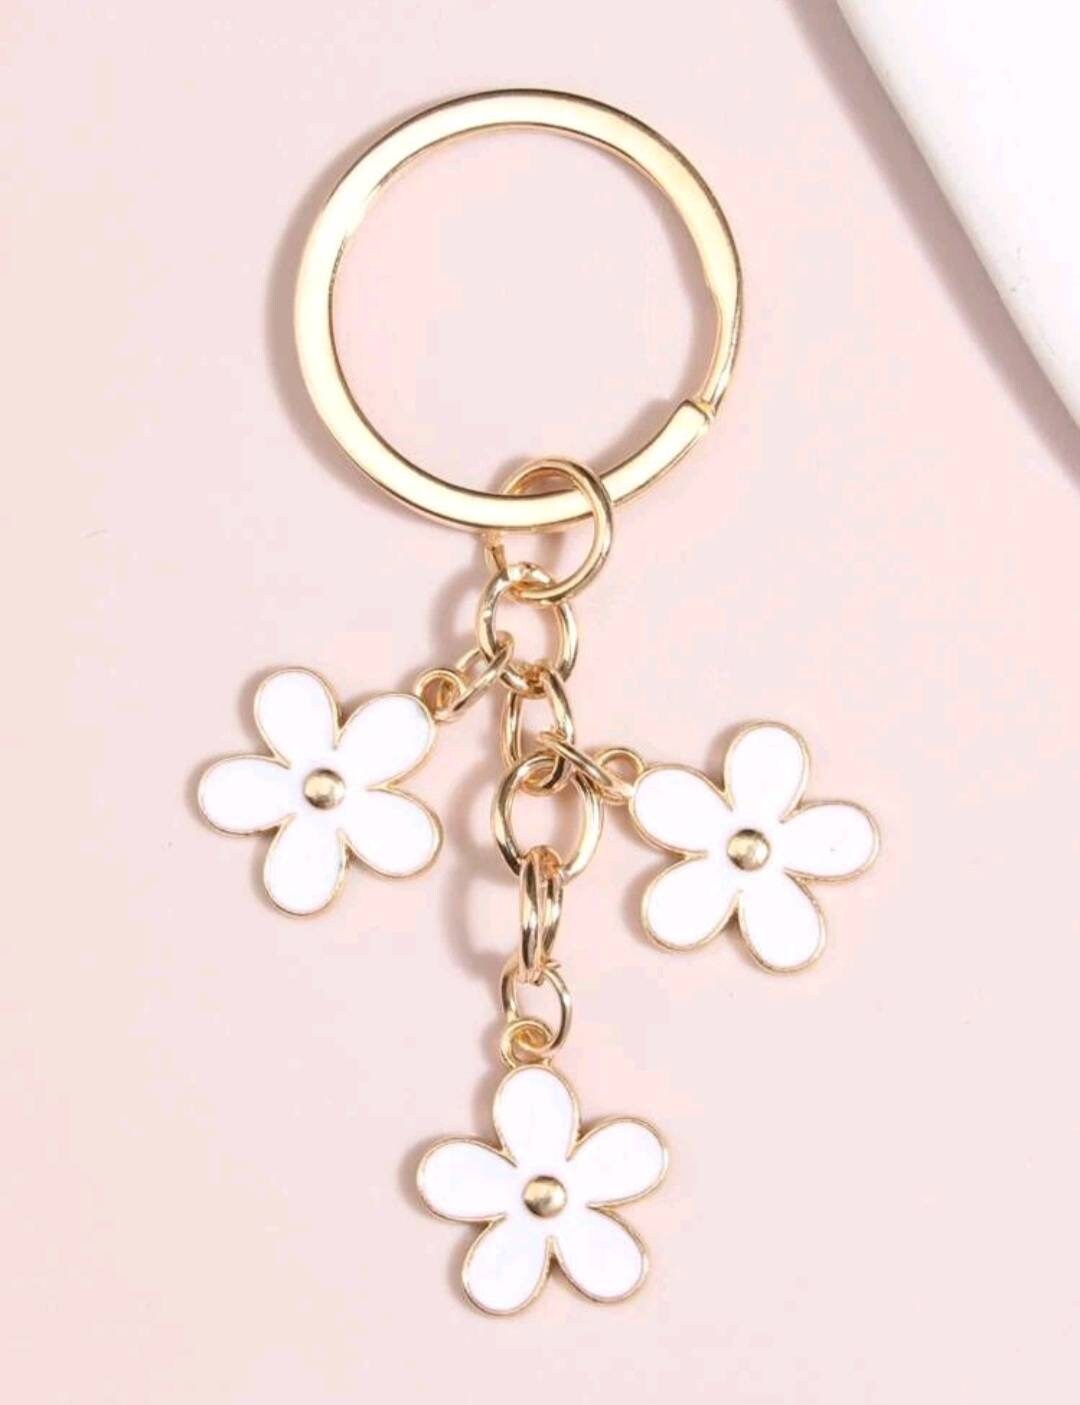 Floral Flower Daisy Charm Keyring Keychain - Etsy UK